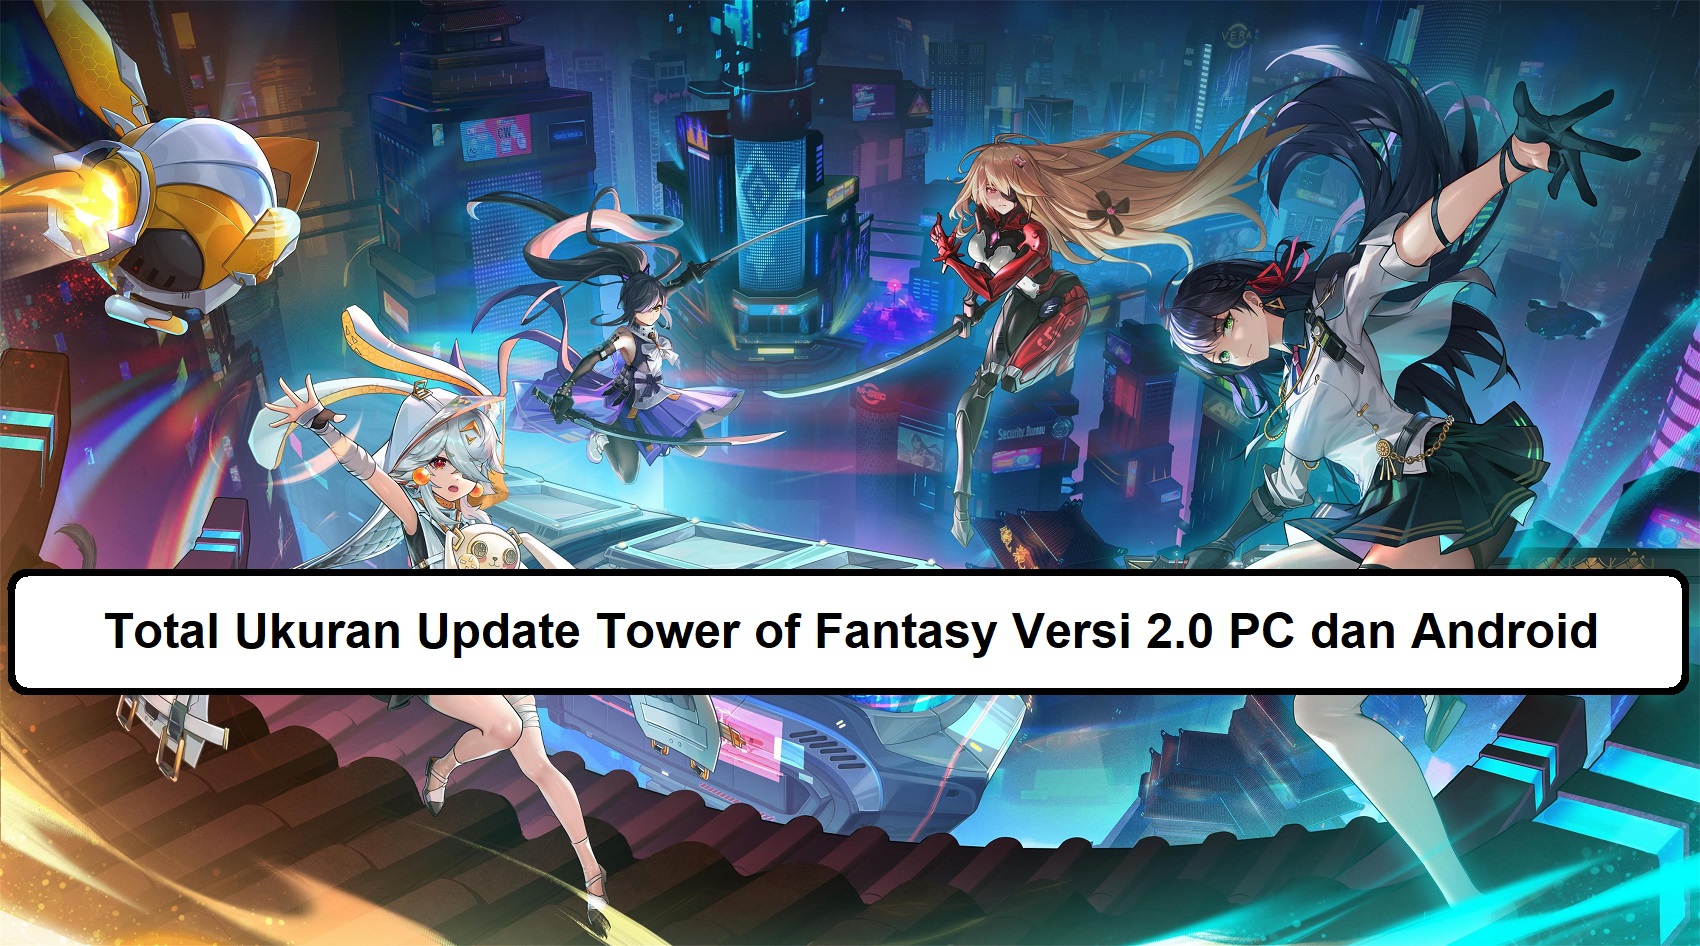 Total Ukuran Update Tower of Fantasy Versi 2.0 PC dan Android